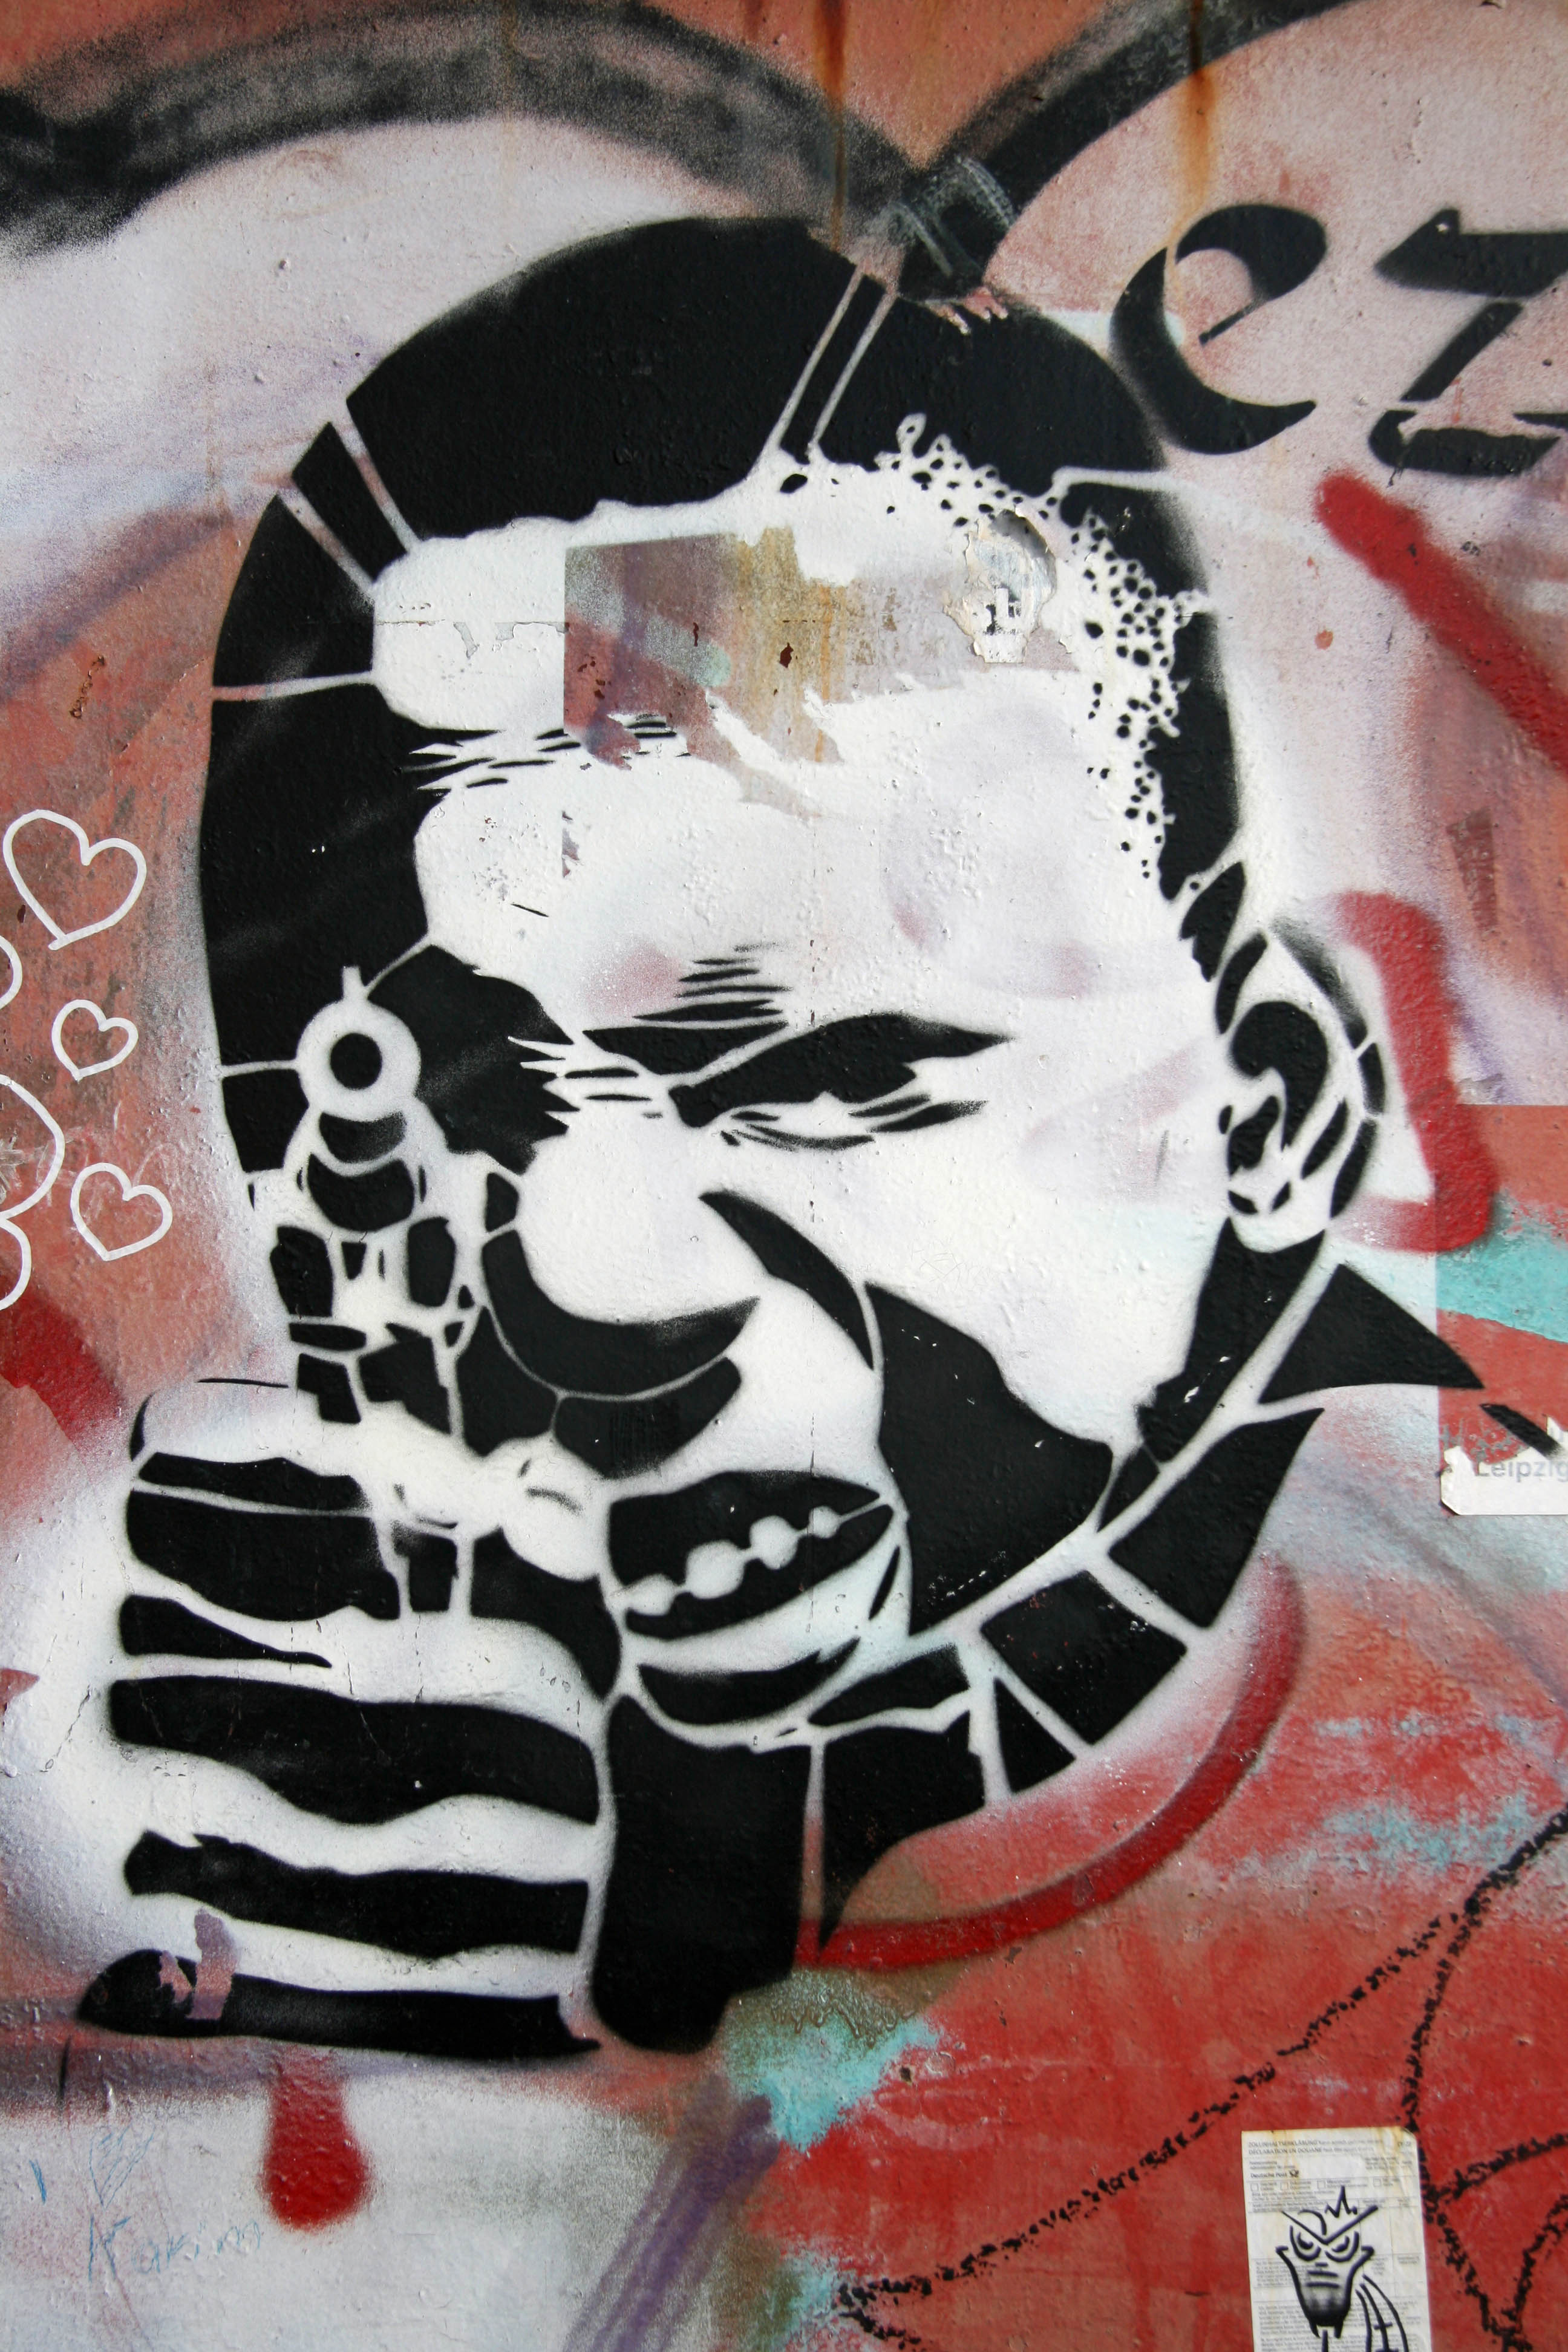 Shooter: Street Art by Unknown Artist in Berlin